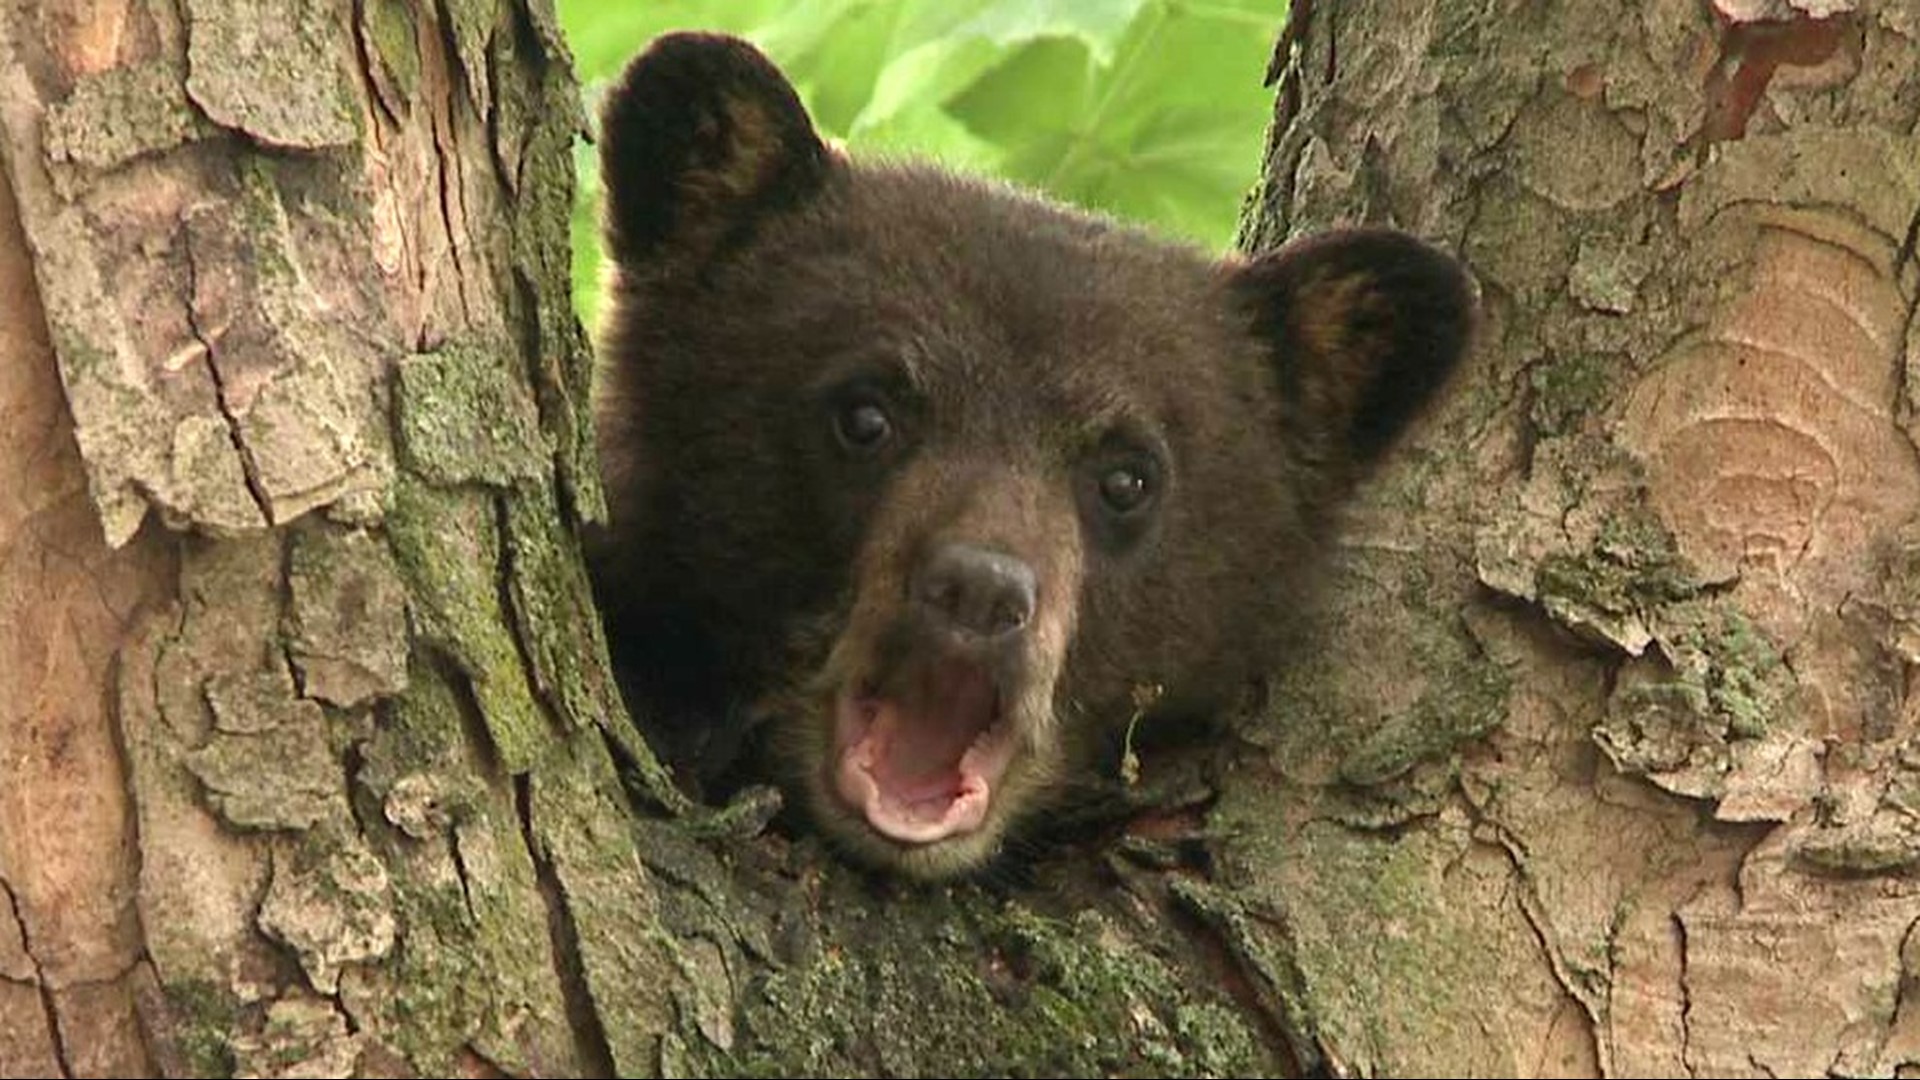 WATCH Very Cute Bear Cub in a Tree